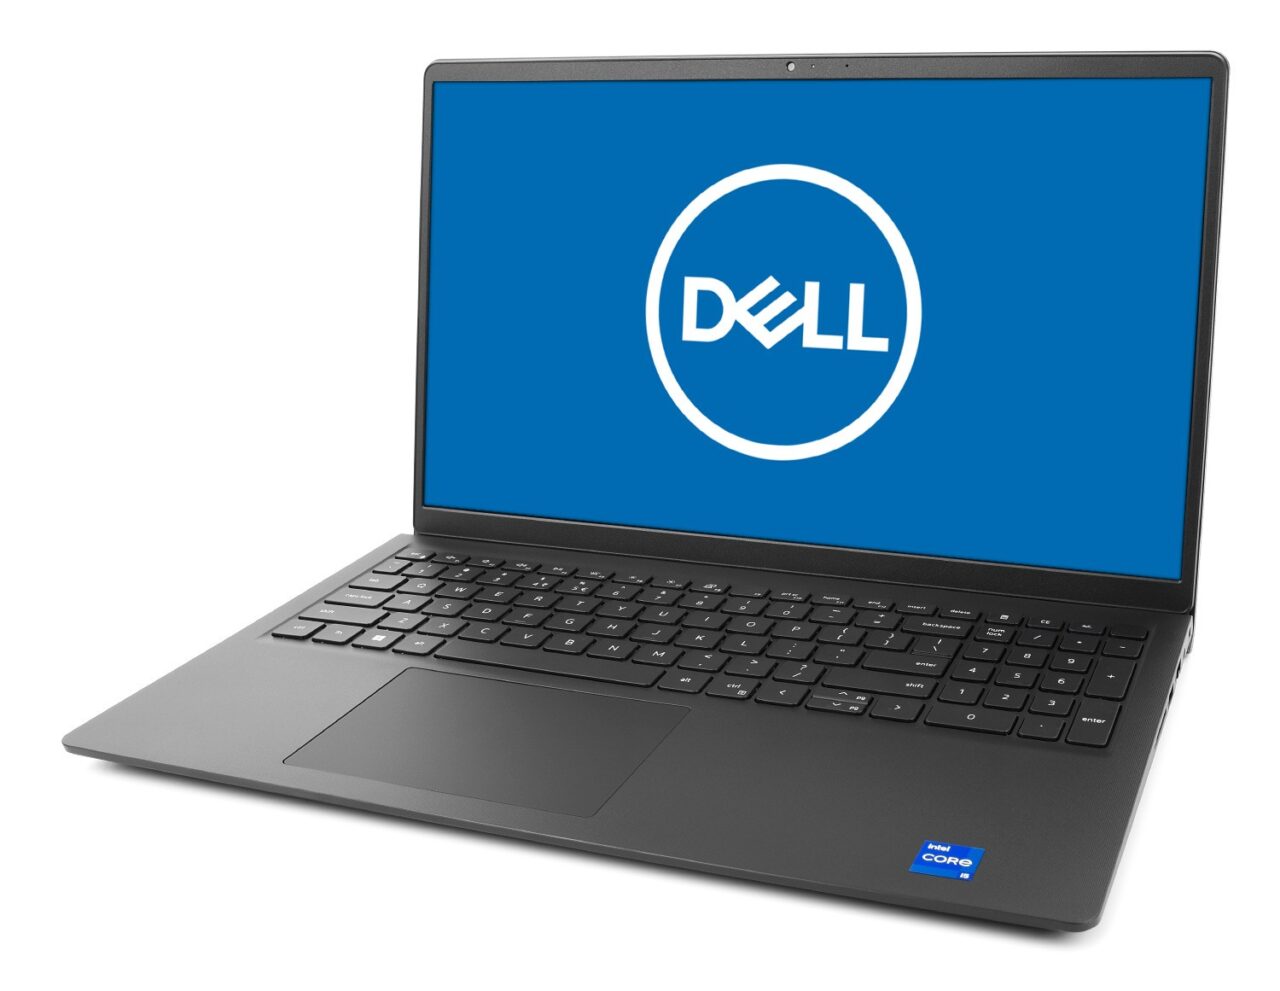 Laptop firmy Dell Vostro 3050 na białym tle, z otwartą klapą i widocznym logo Dell na ekranie.